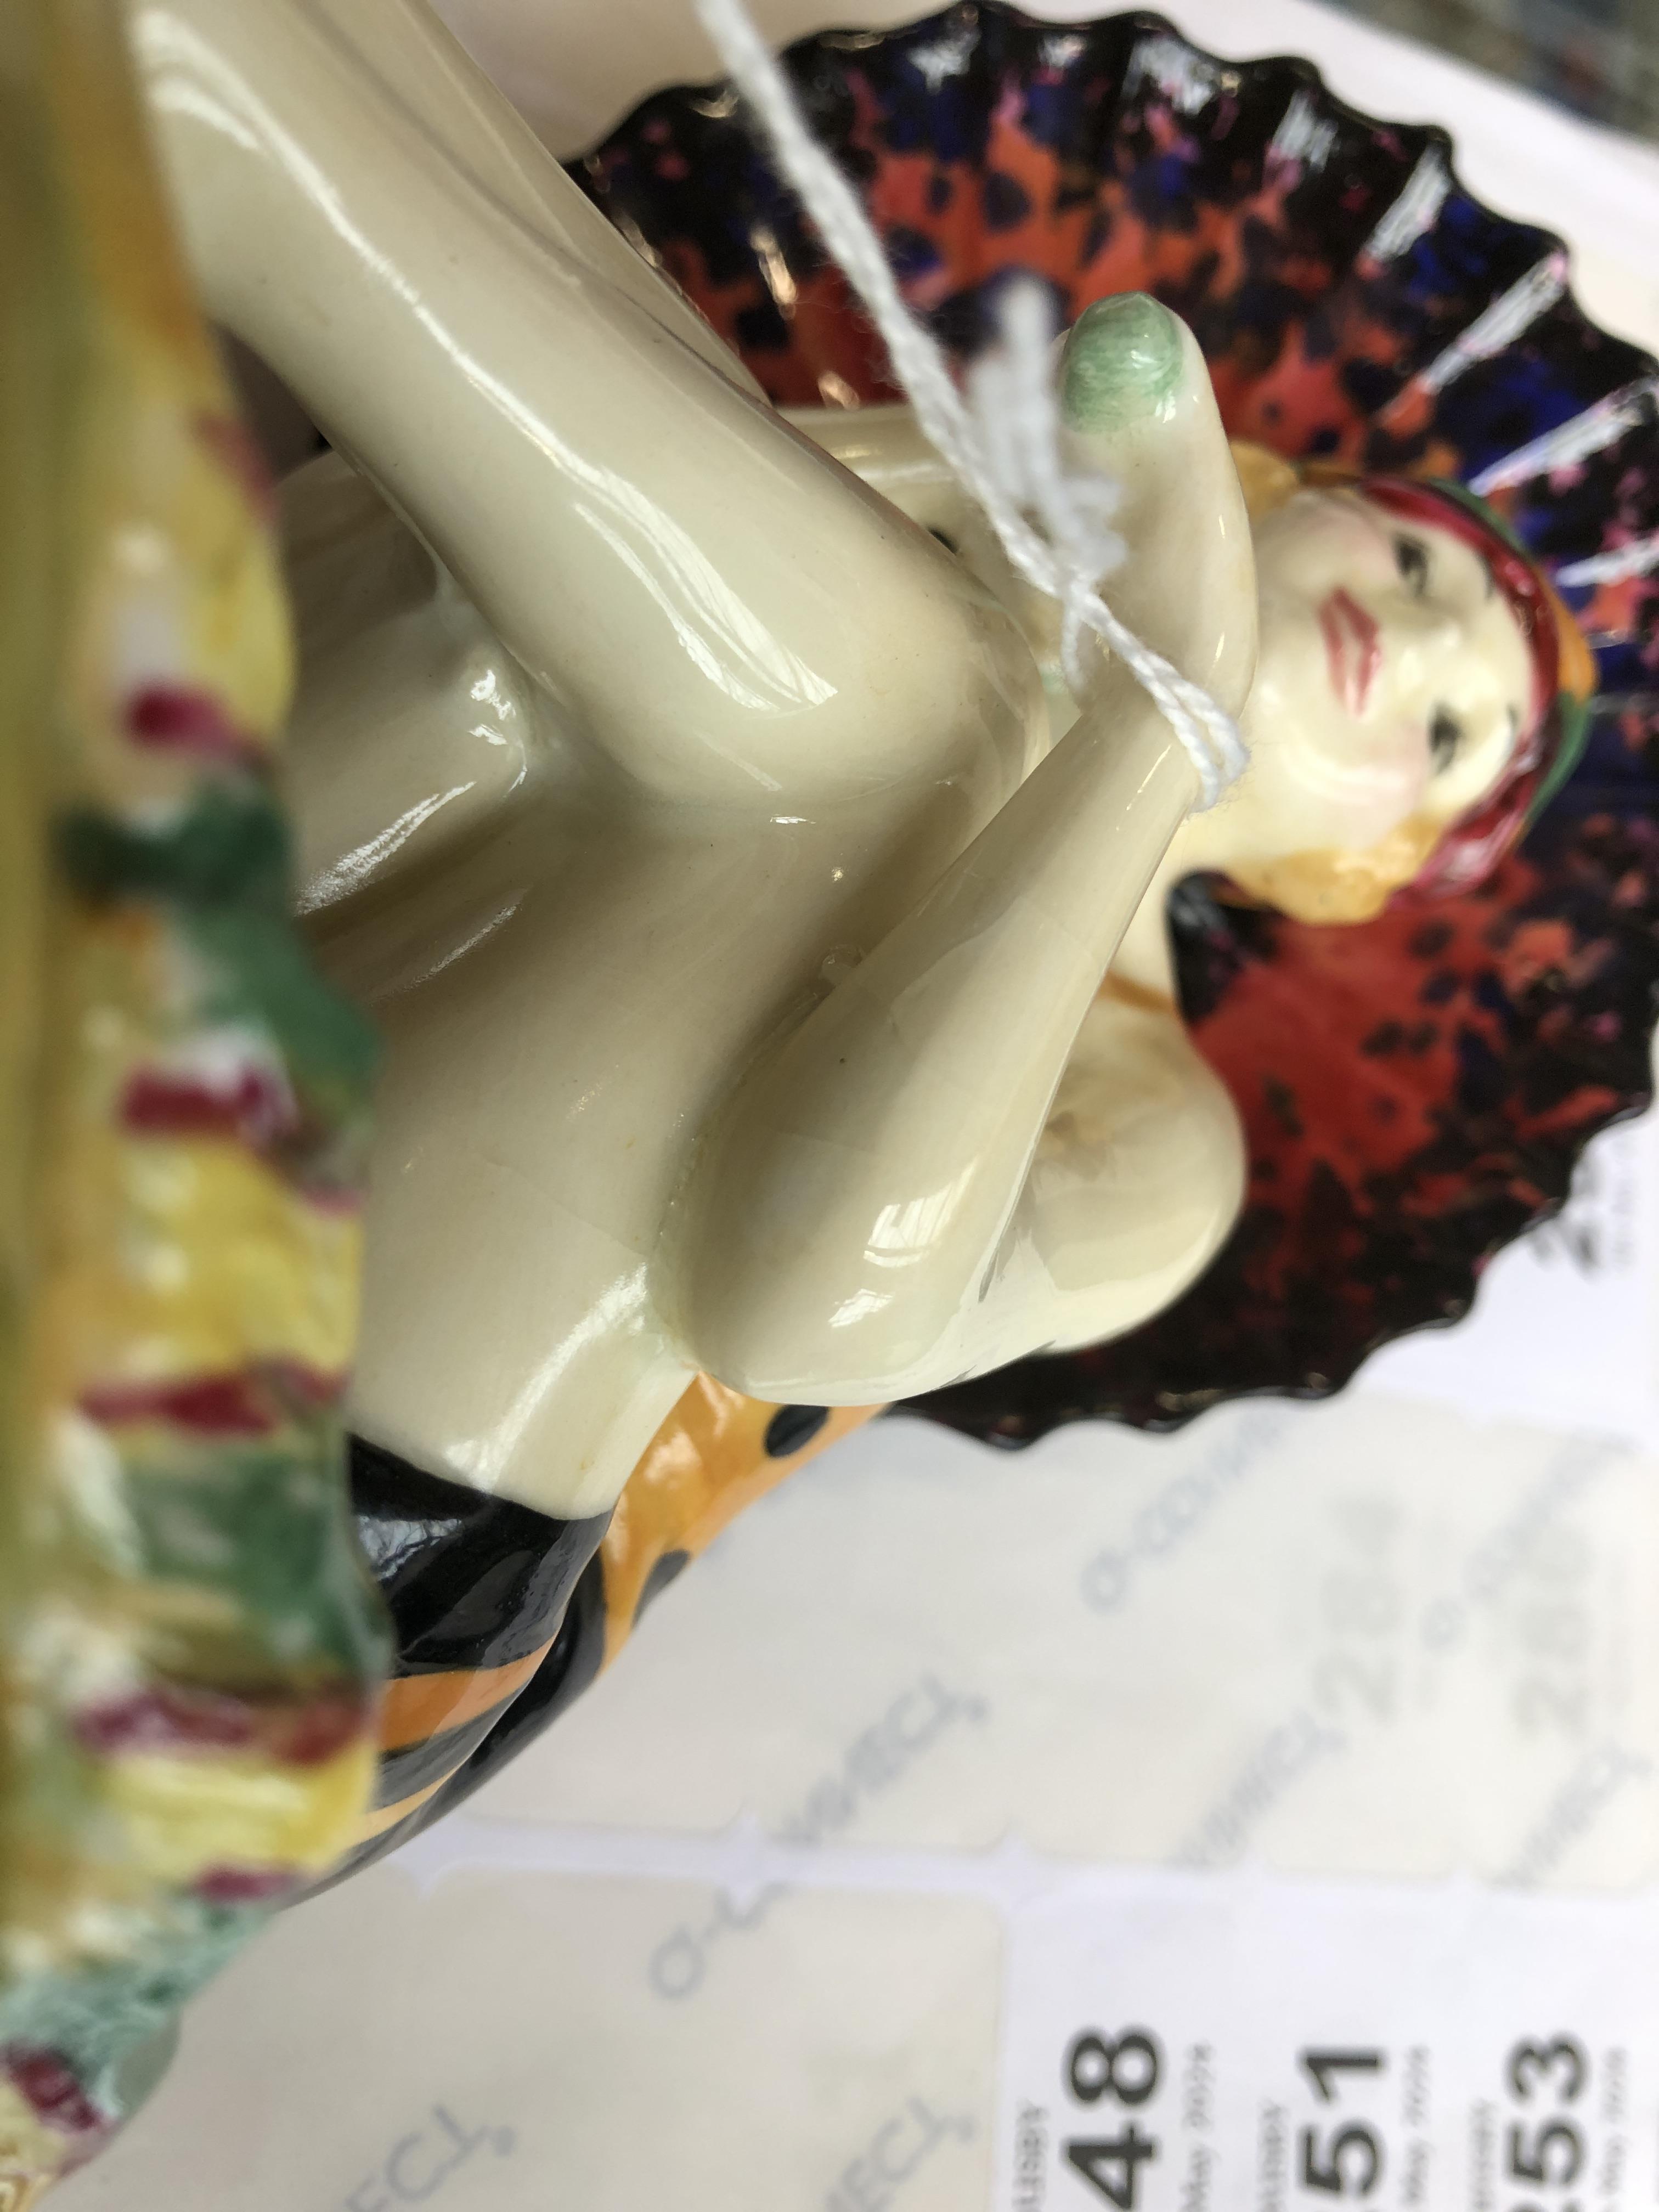 A Royal Doulton Art Deco figurine, 'Sunshine Girl', model no. HN1348, designed by Leslie - Image 8 of 9